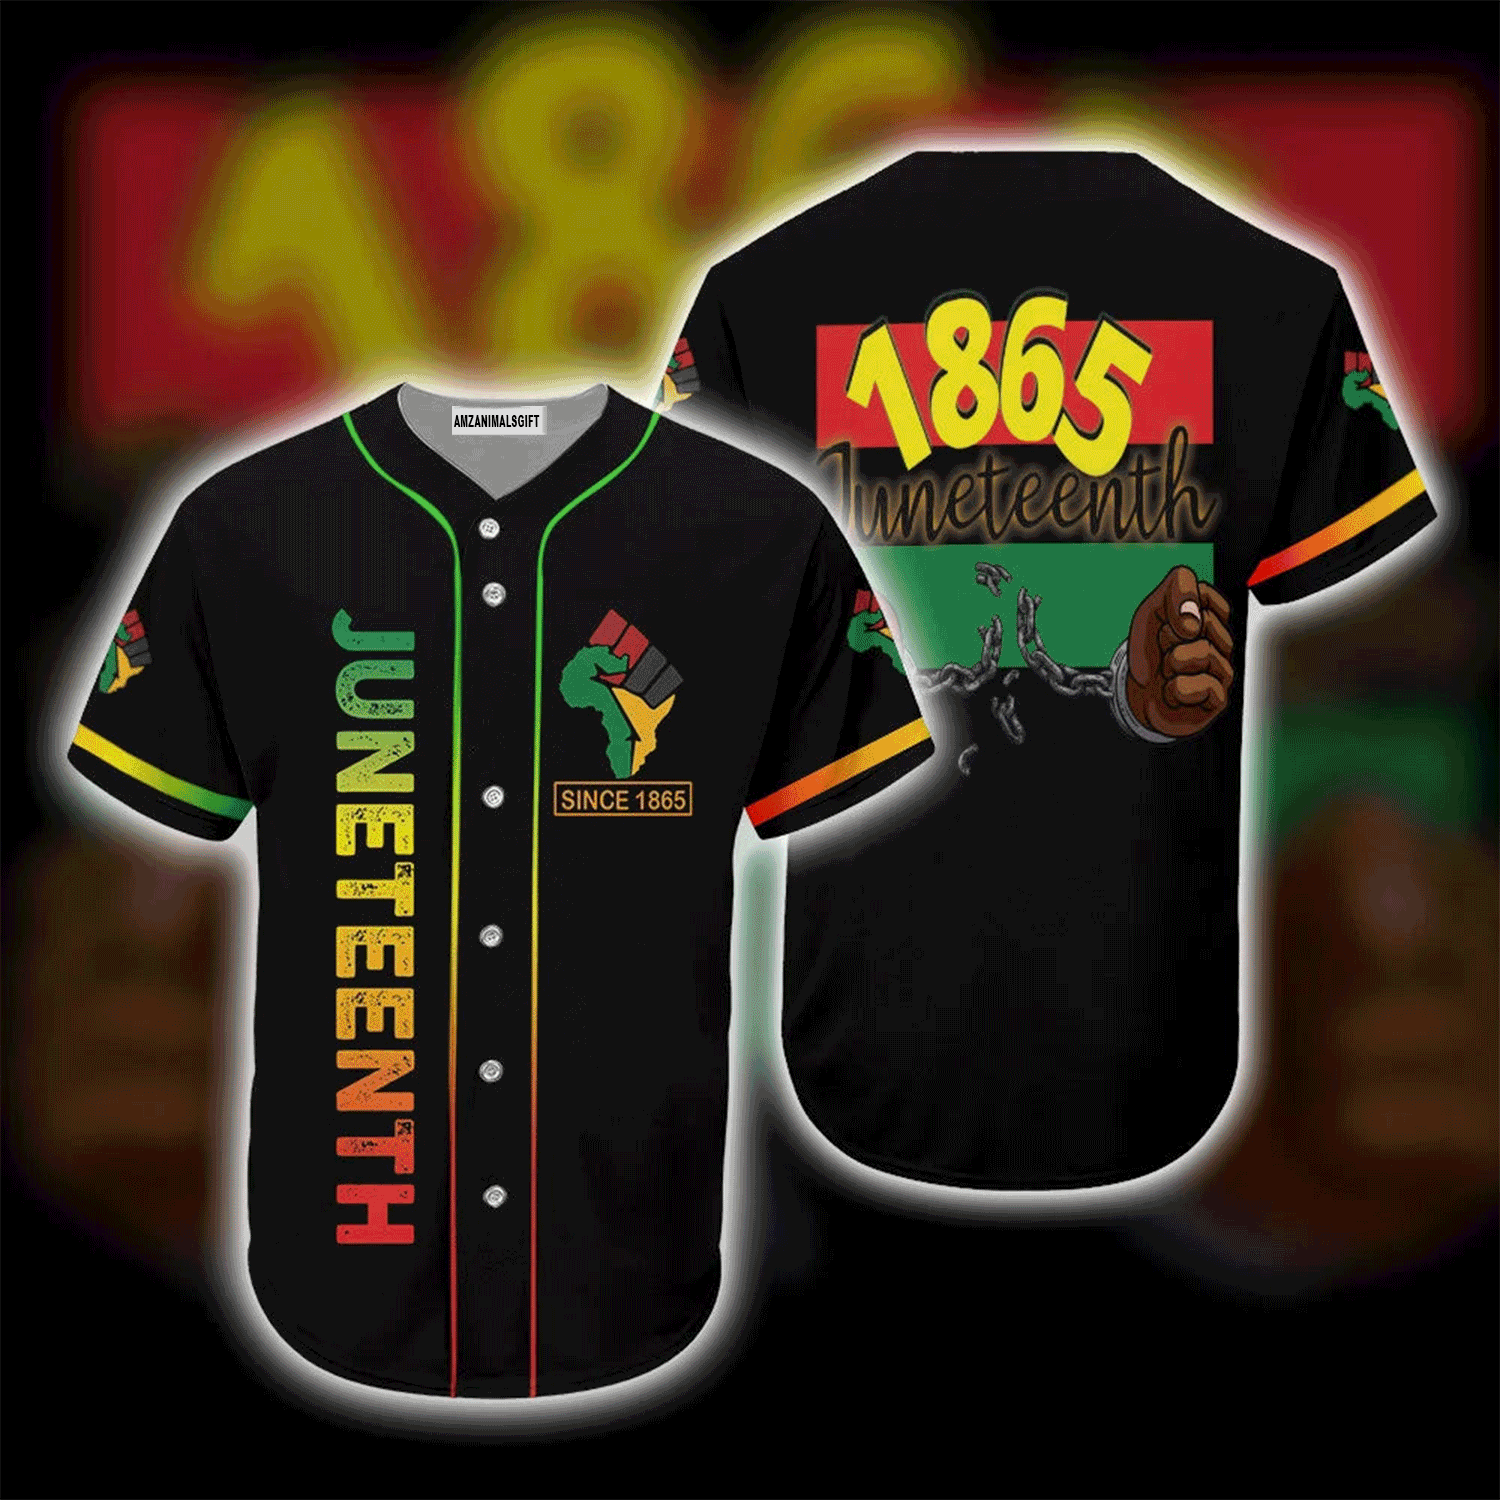 Juneteenth Baseball Jersey Shirt - 1865 Juneteenth Black Pride Baseball Jersey Shirt For Men & Women, Perfect Gift For Juneteenth